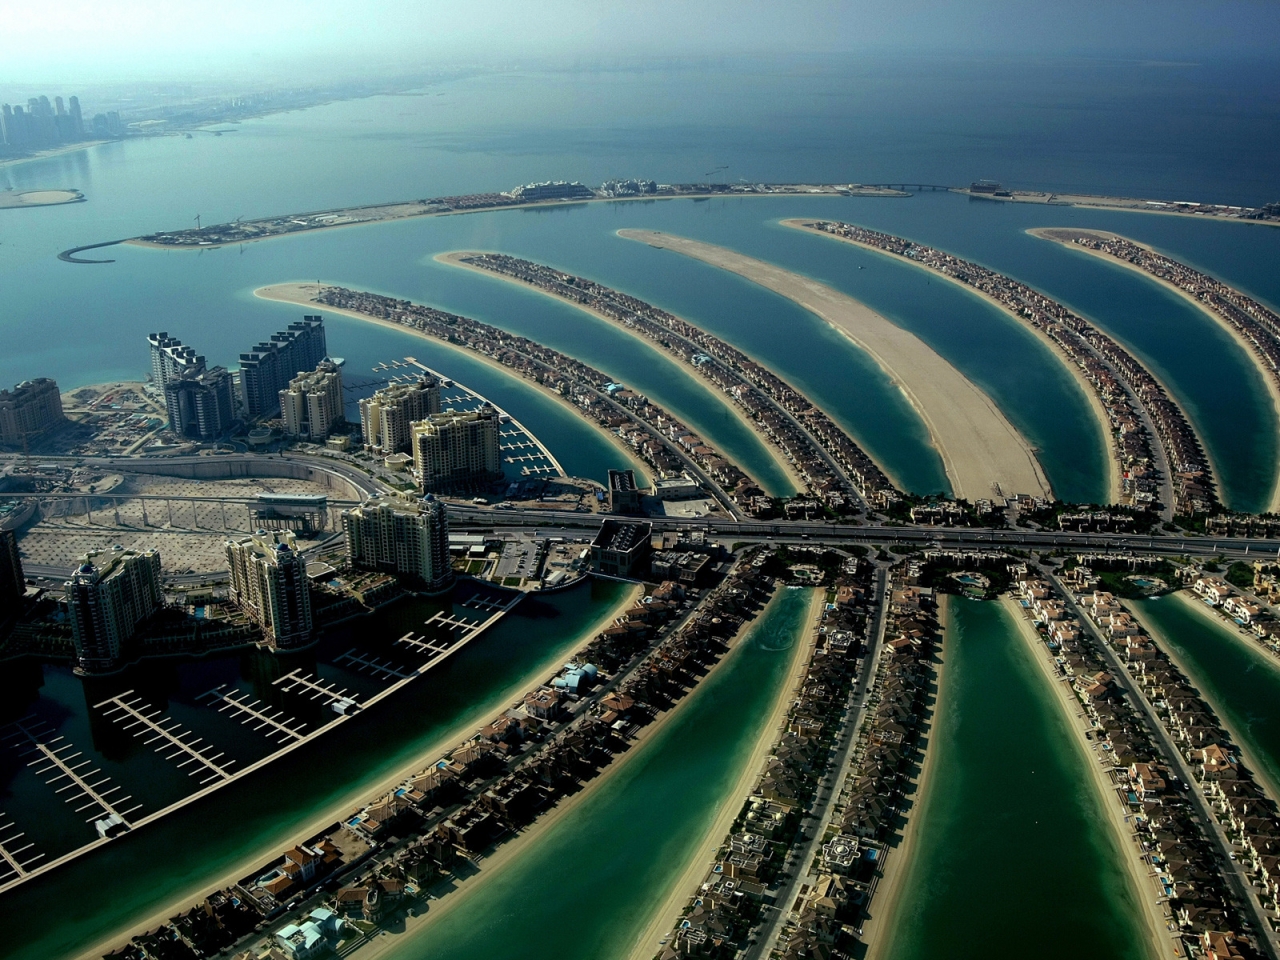 Dubai Palm Island for 1280 x 960 resolution